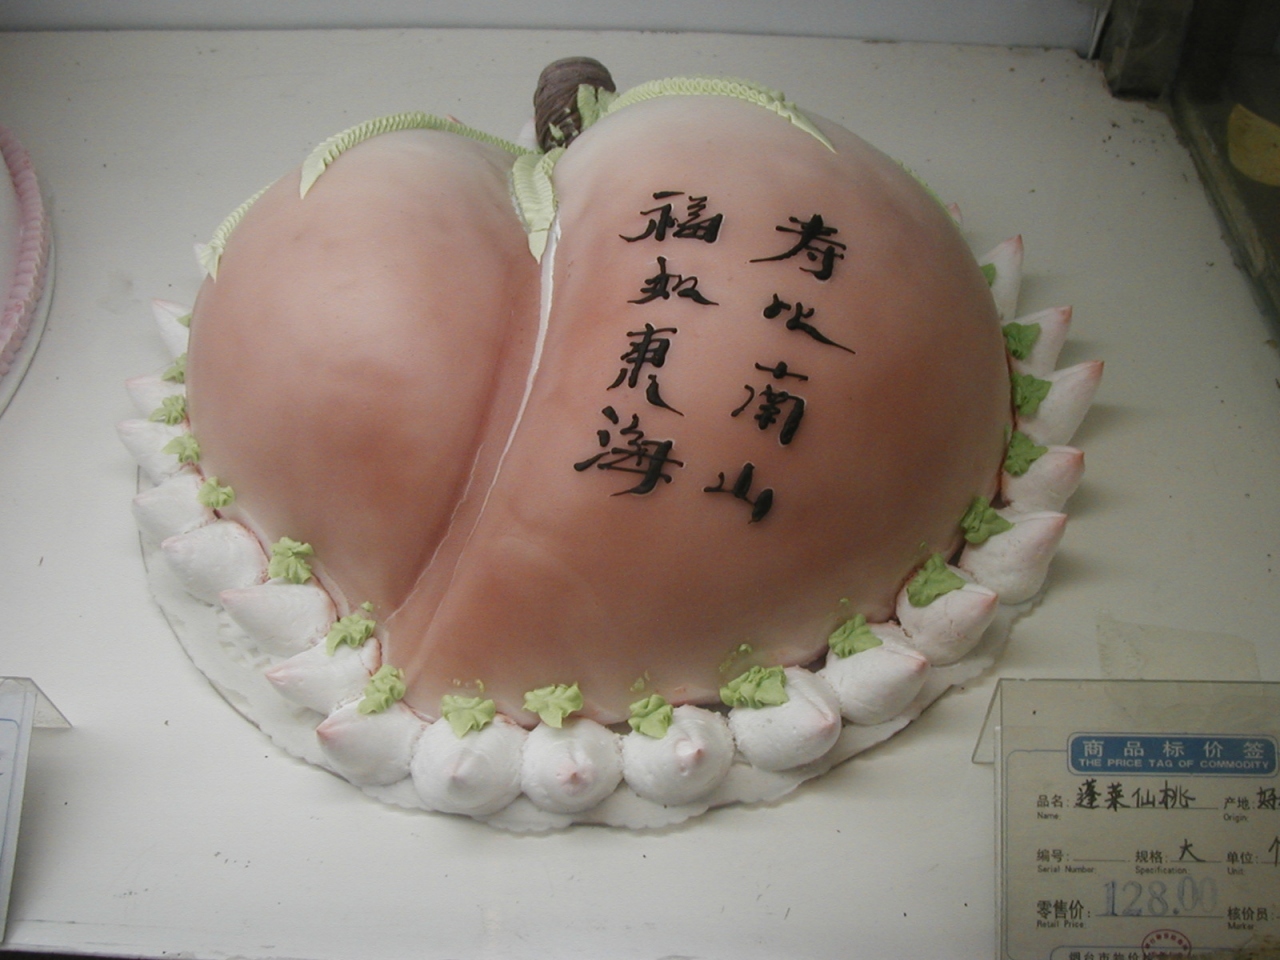 生日蛋糕 中国のケーキ 中国の旅行記 ブログ By Nao00さん フォートラベル